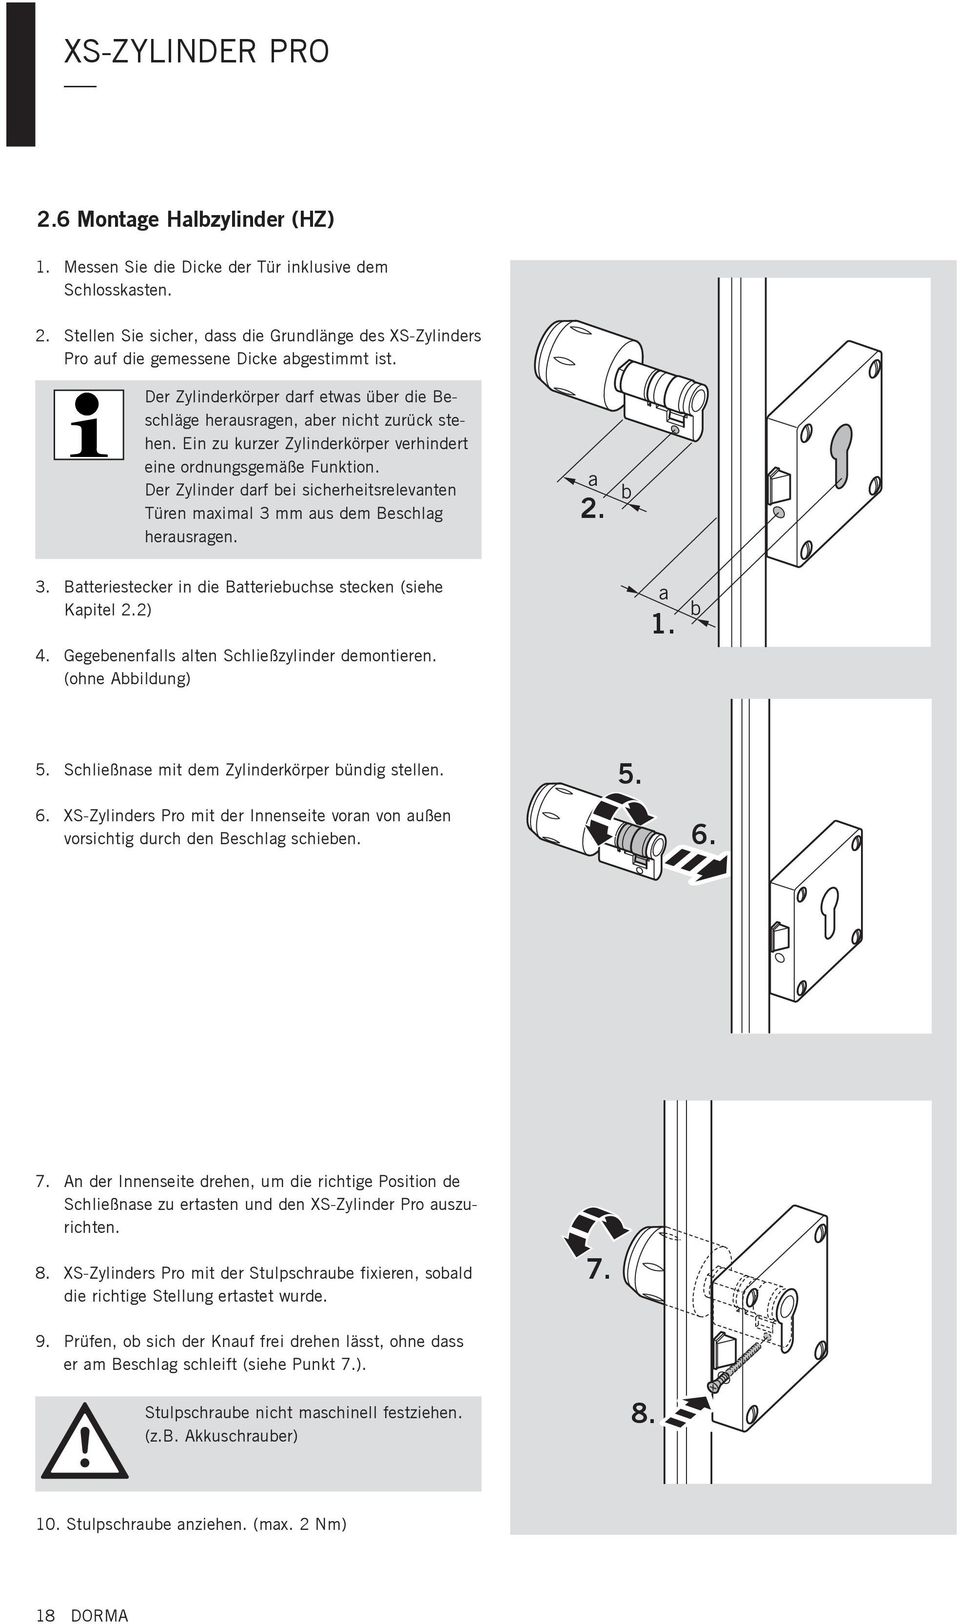 Der Zylinder darf bei sicherheitsrelevanten Türen maximal 3 mm aus dem Beschlag herausragen. a 2. b 3. Batteriestecker in die Batteriebuchse stecken (siehe Kapitel 2.2) 4.